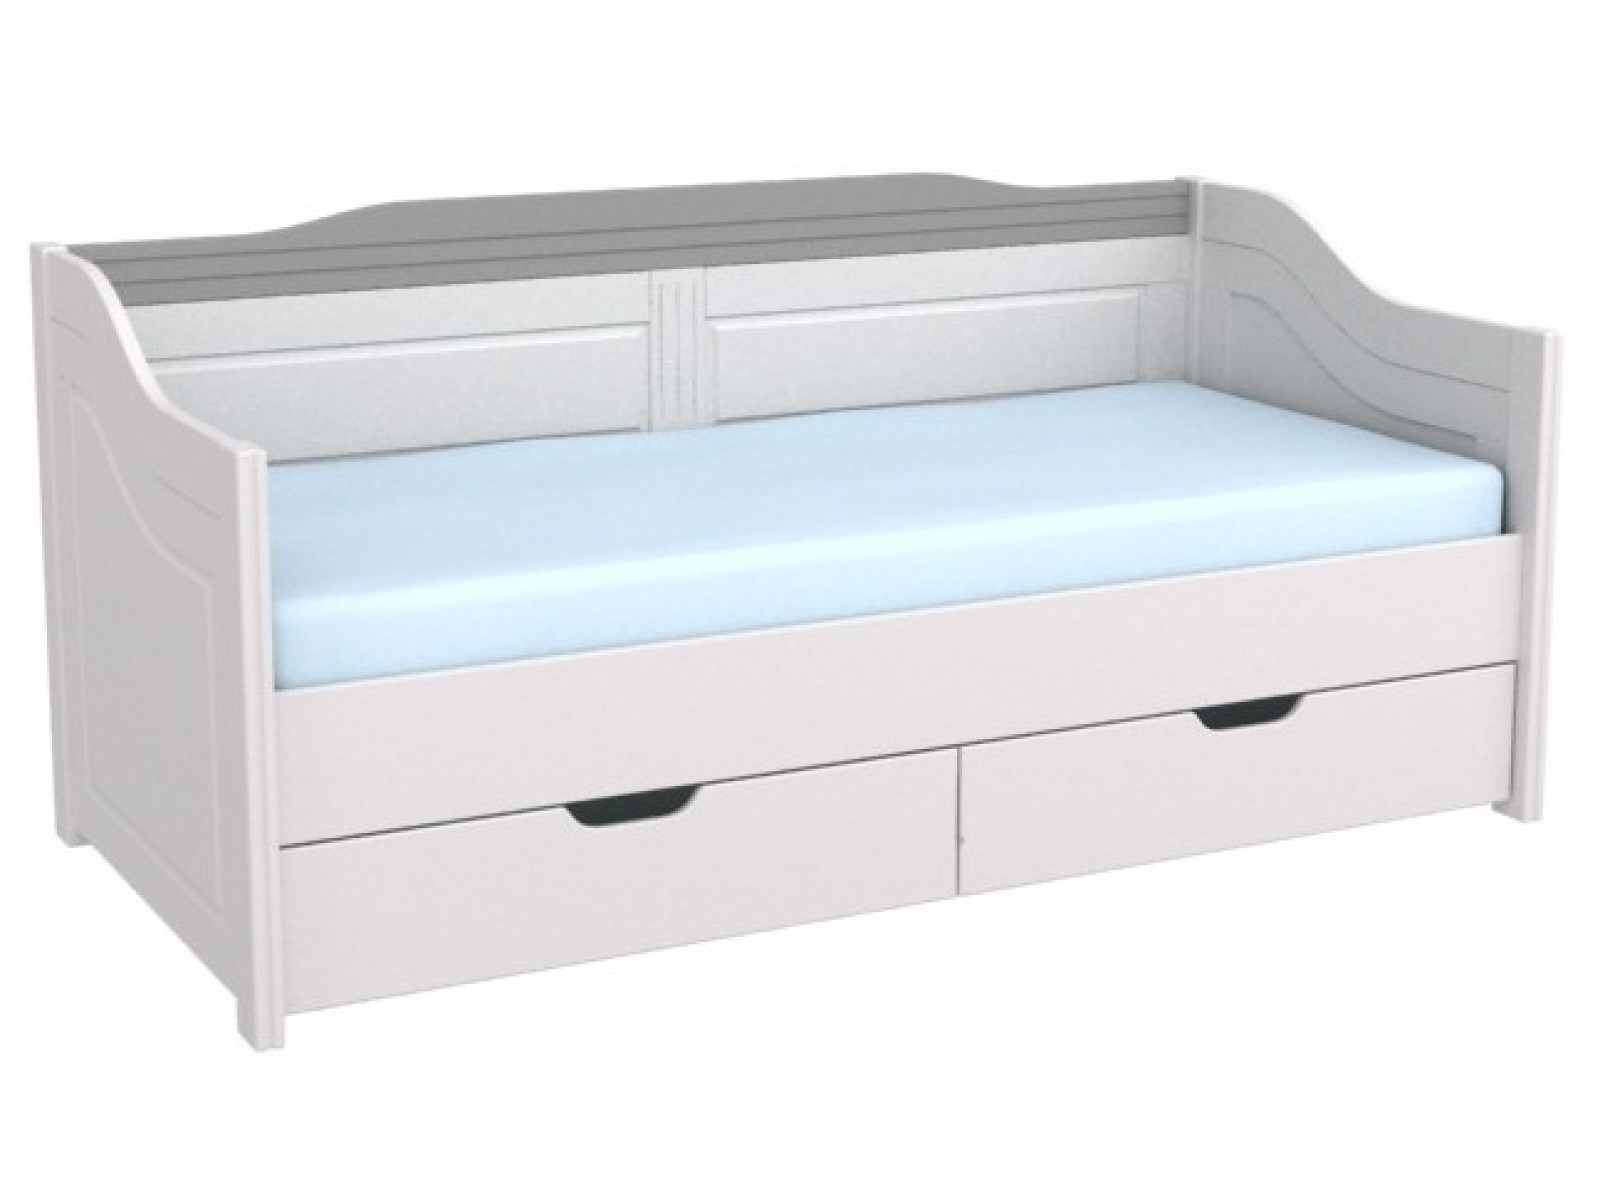 Кровать-диван с ящиками Бейли купить по выгодной цене в интернет-магазине MiaSofia